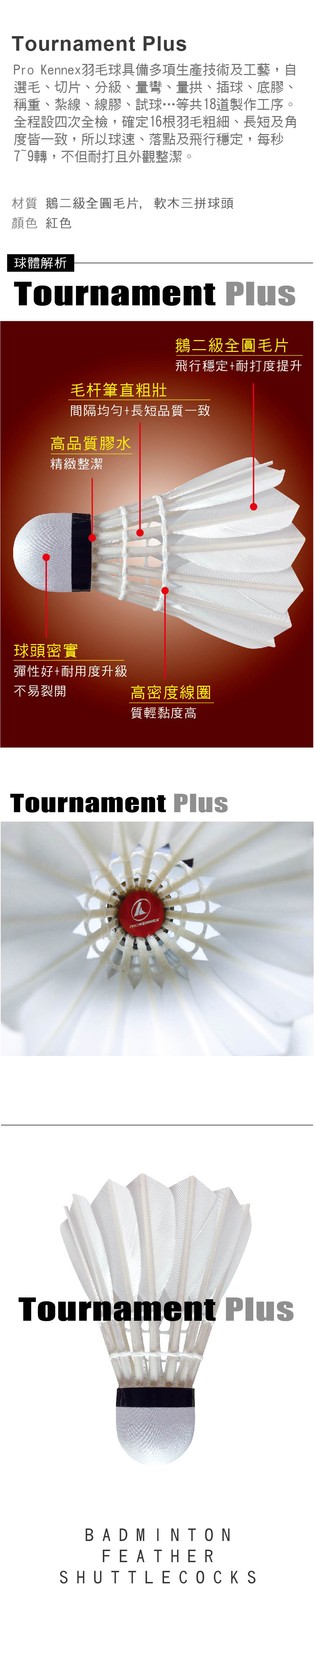 Tournament Plus